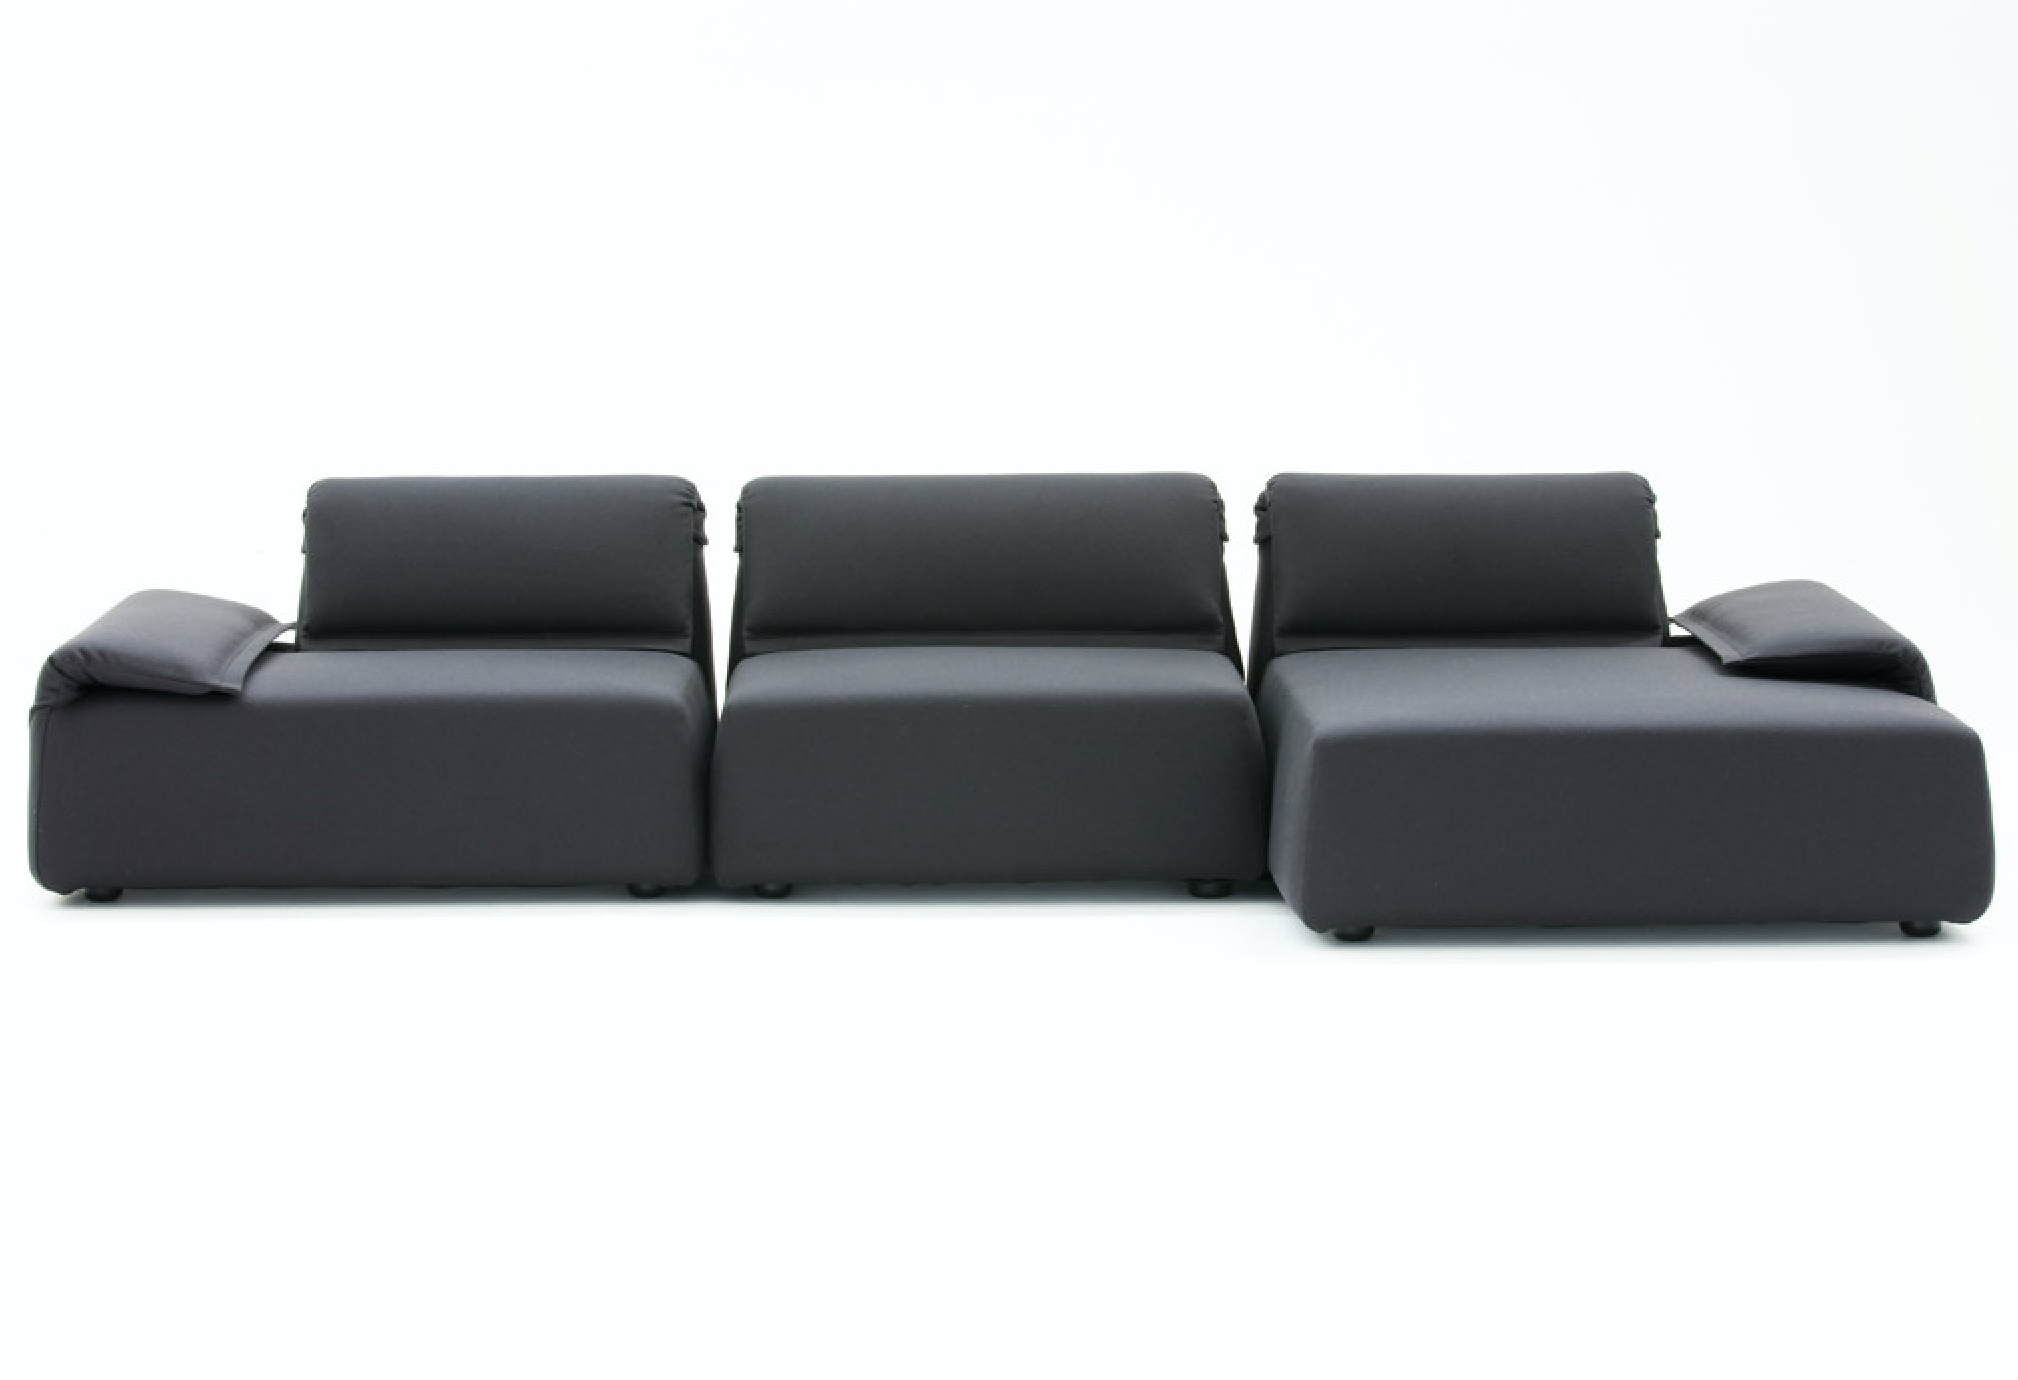 Product Image Highlands Sofa